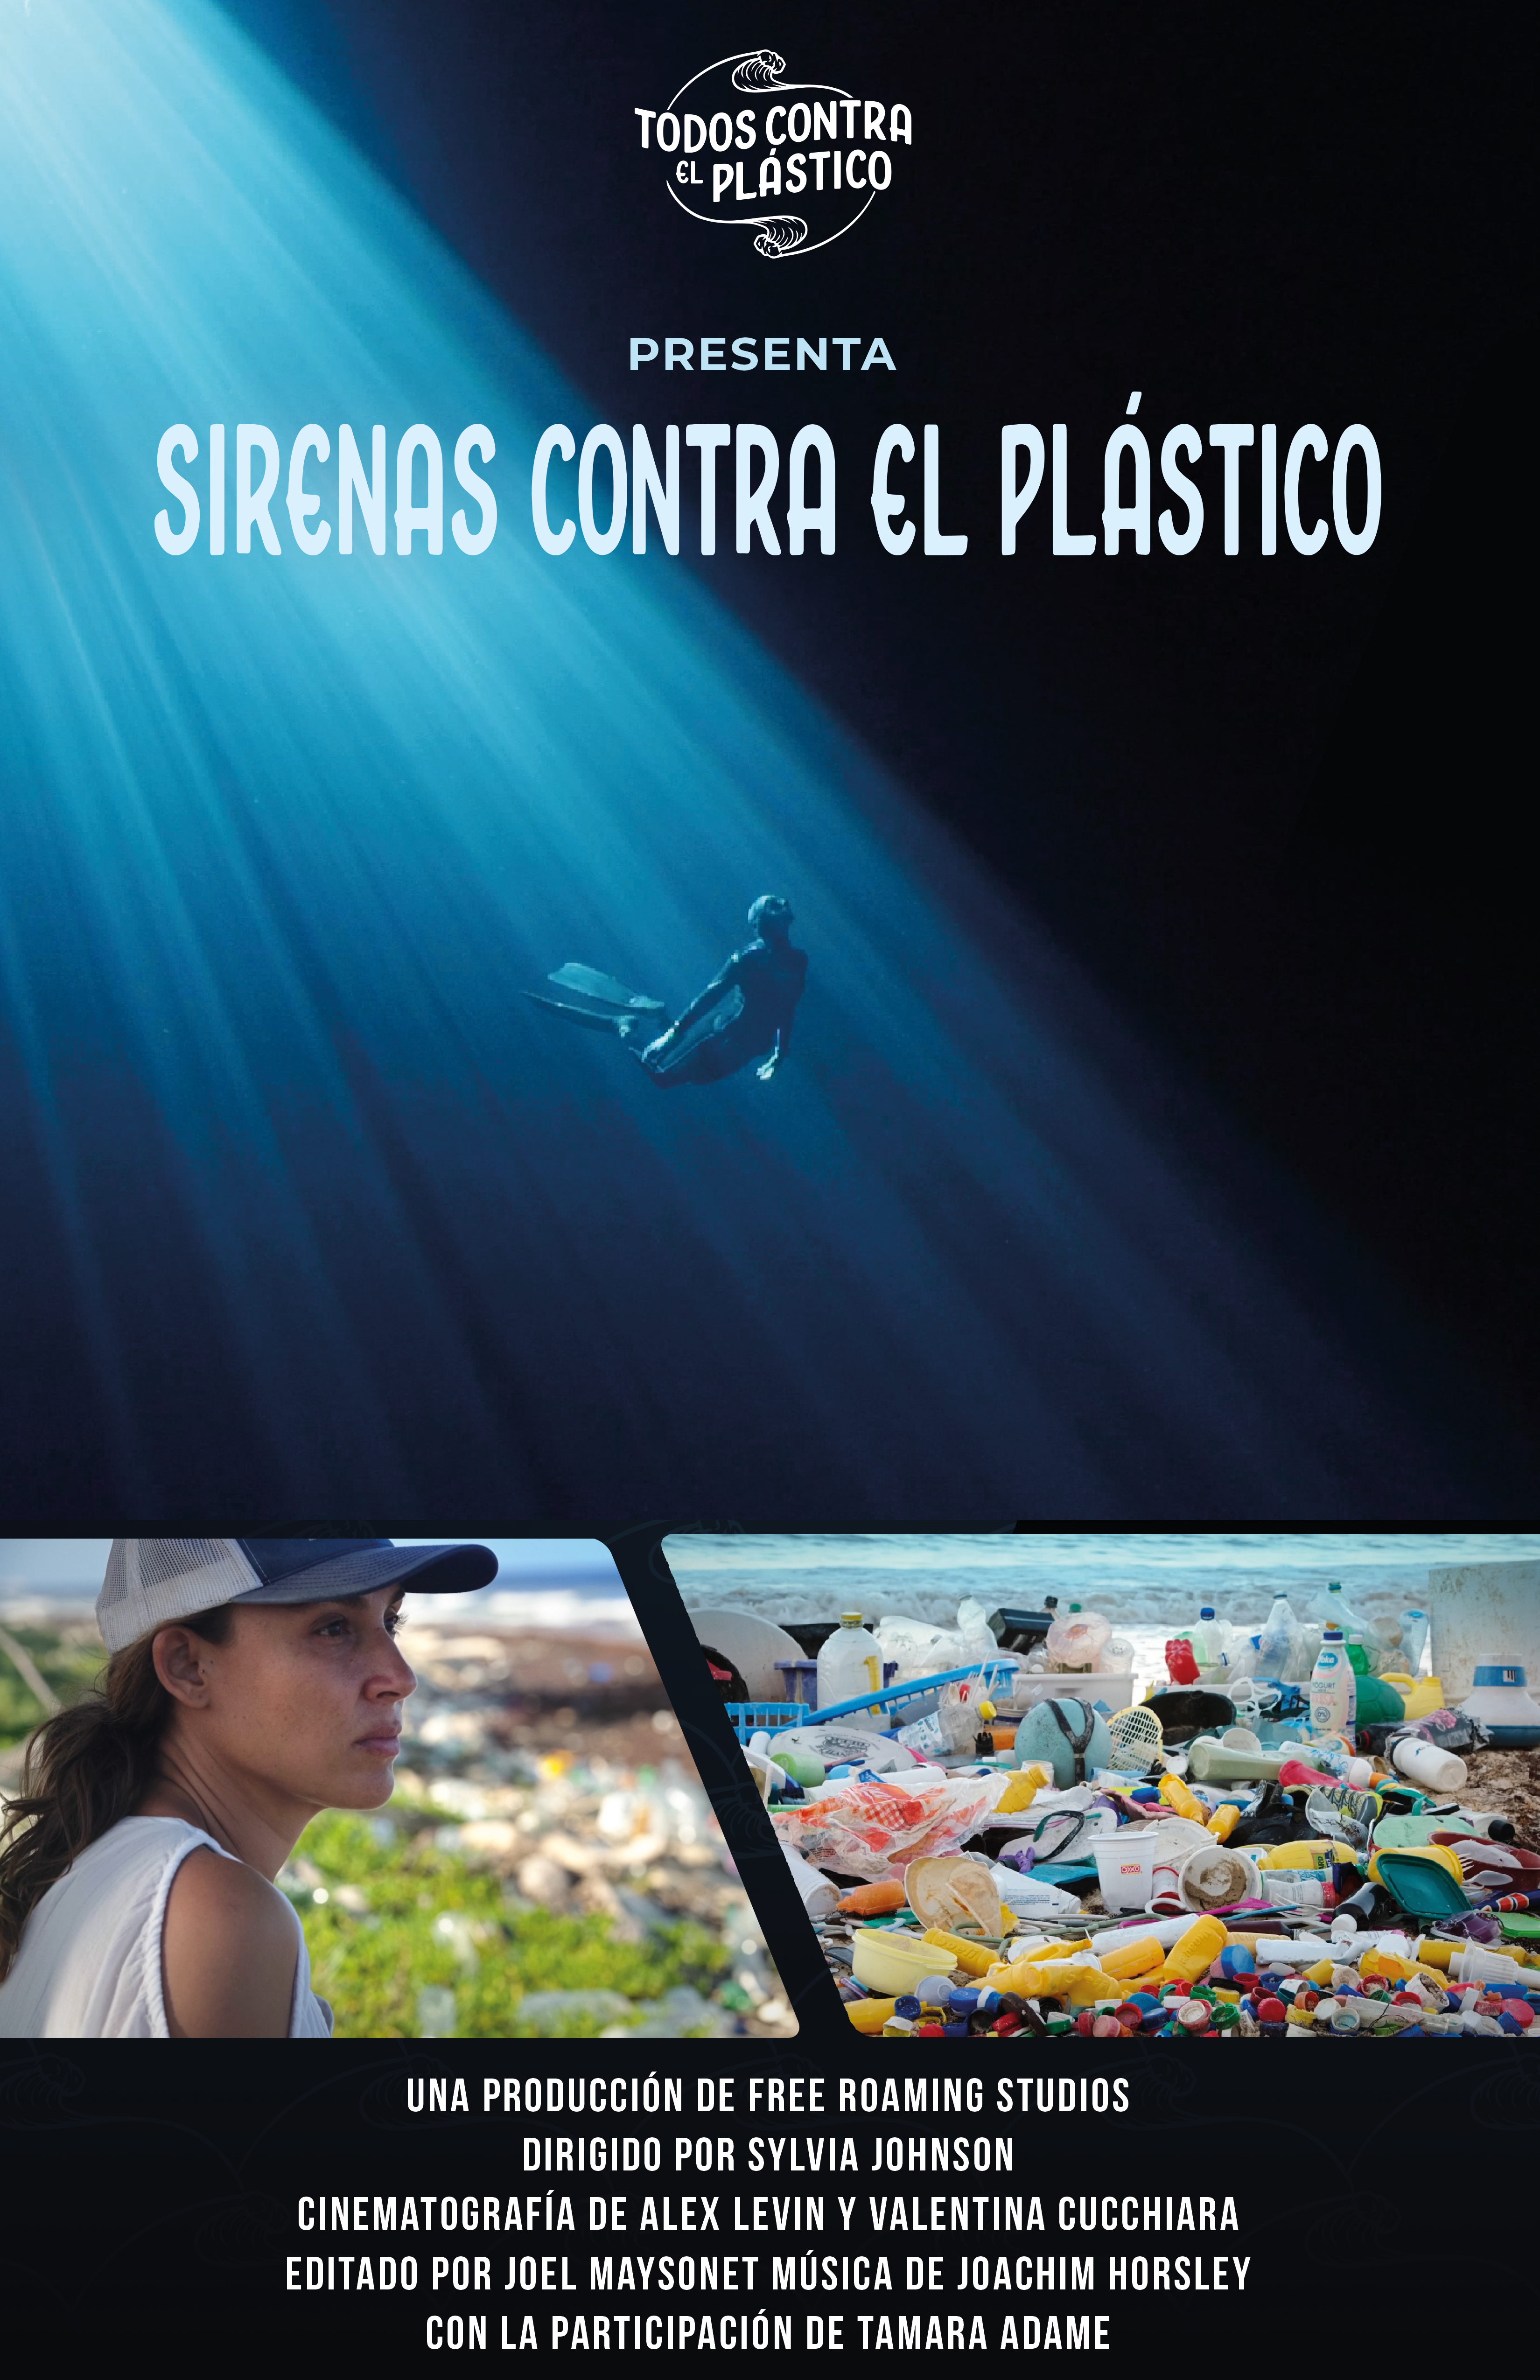 Mermaids Against Plastic